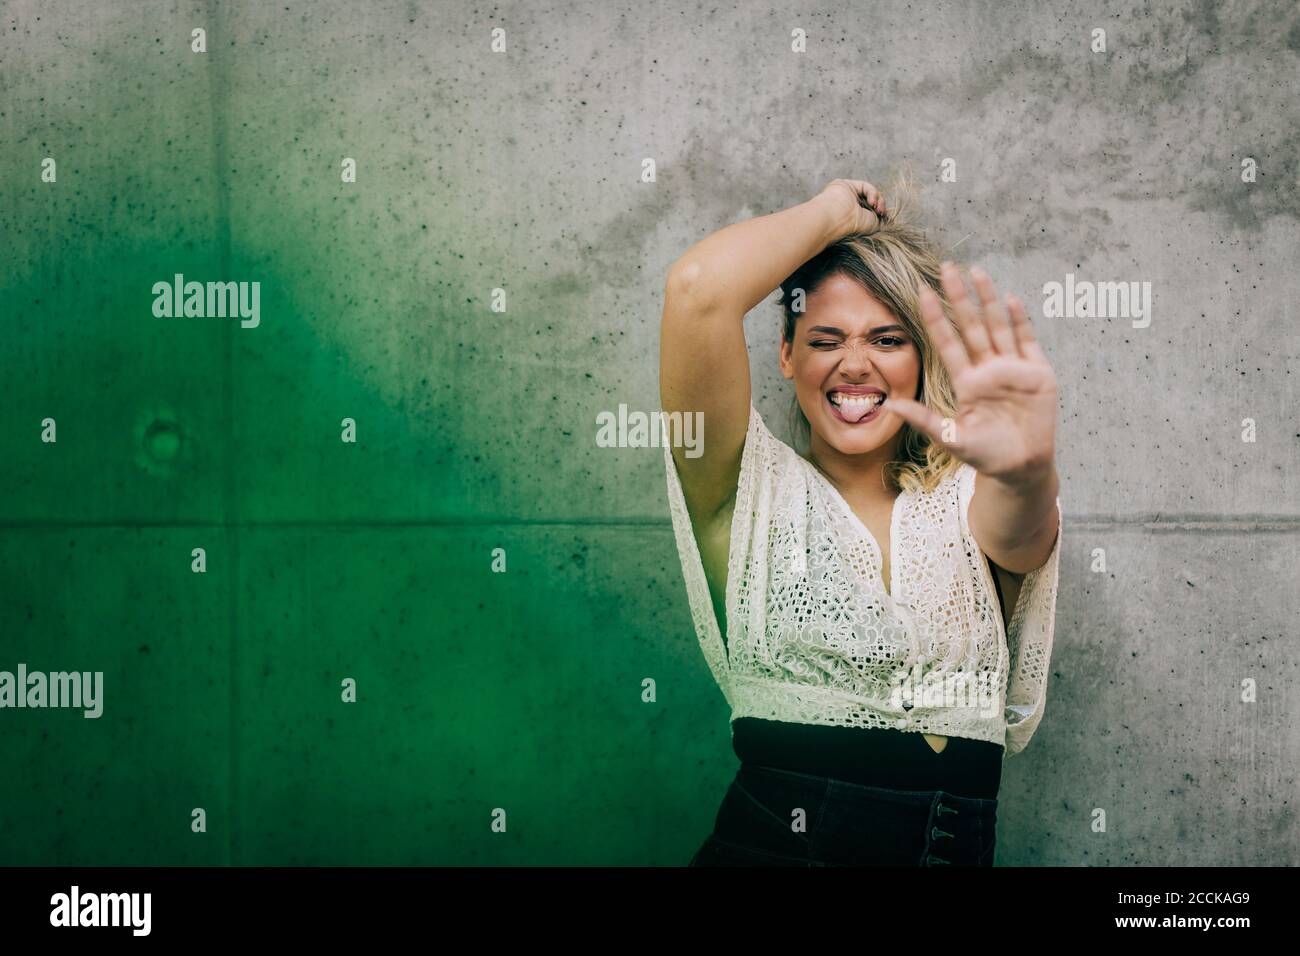 Junge Frau mit Stop-Geste, während sie gegen die grüne Wand steht Stockfoto